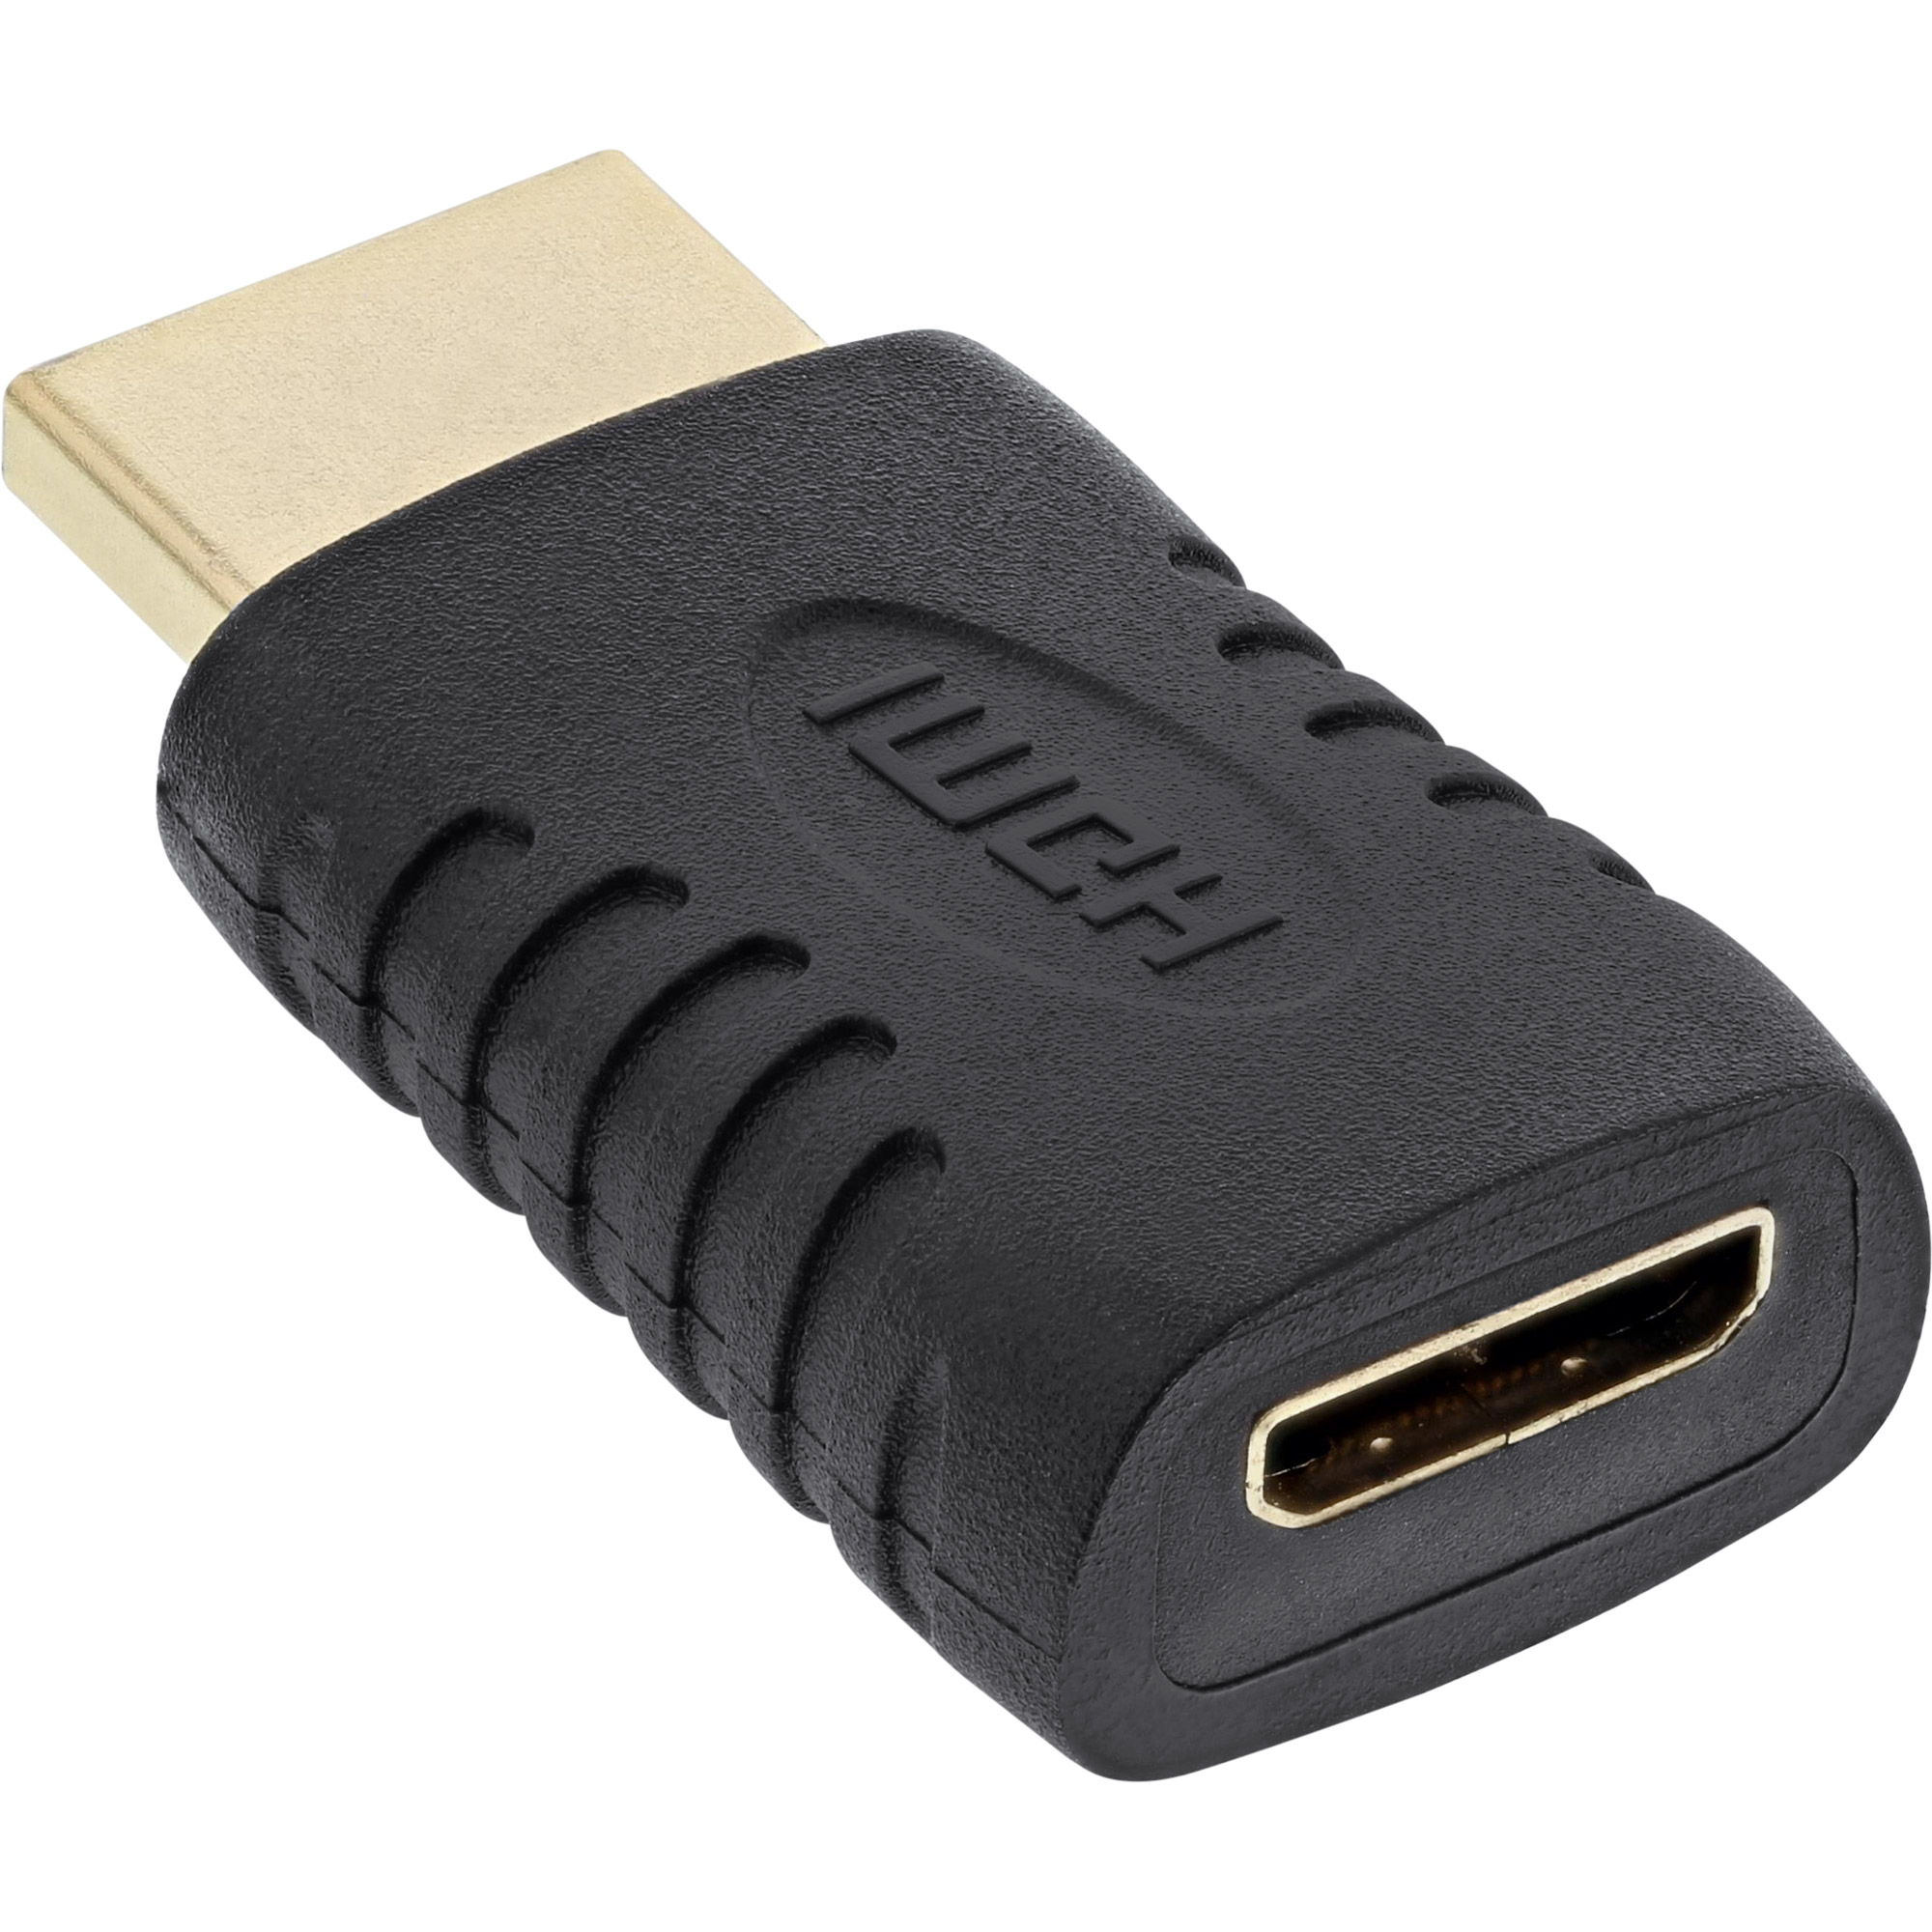 InLine® / HDMI 4K2K HDMI zu Stecker mini Adapter, HDMI DVI Buchse, HDMI kompatibel, C / INLINE Mini / A auf